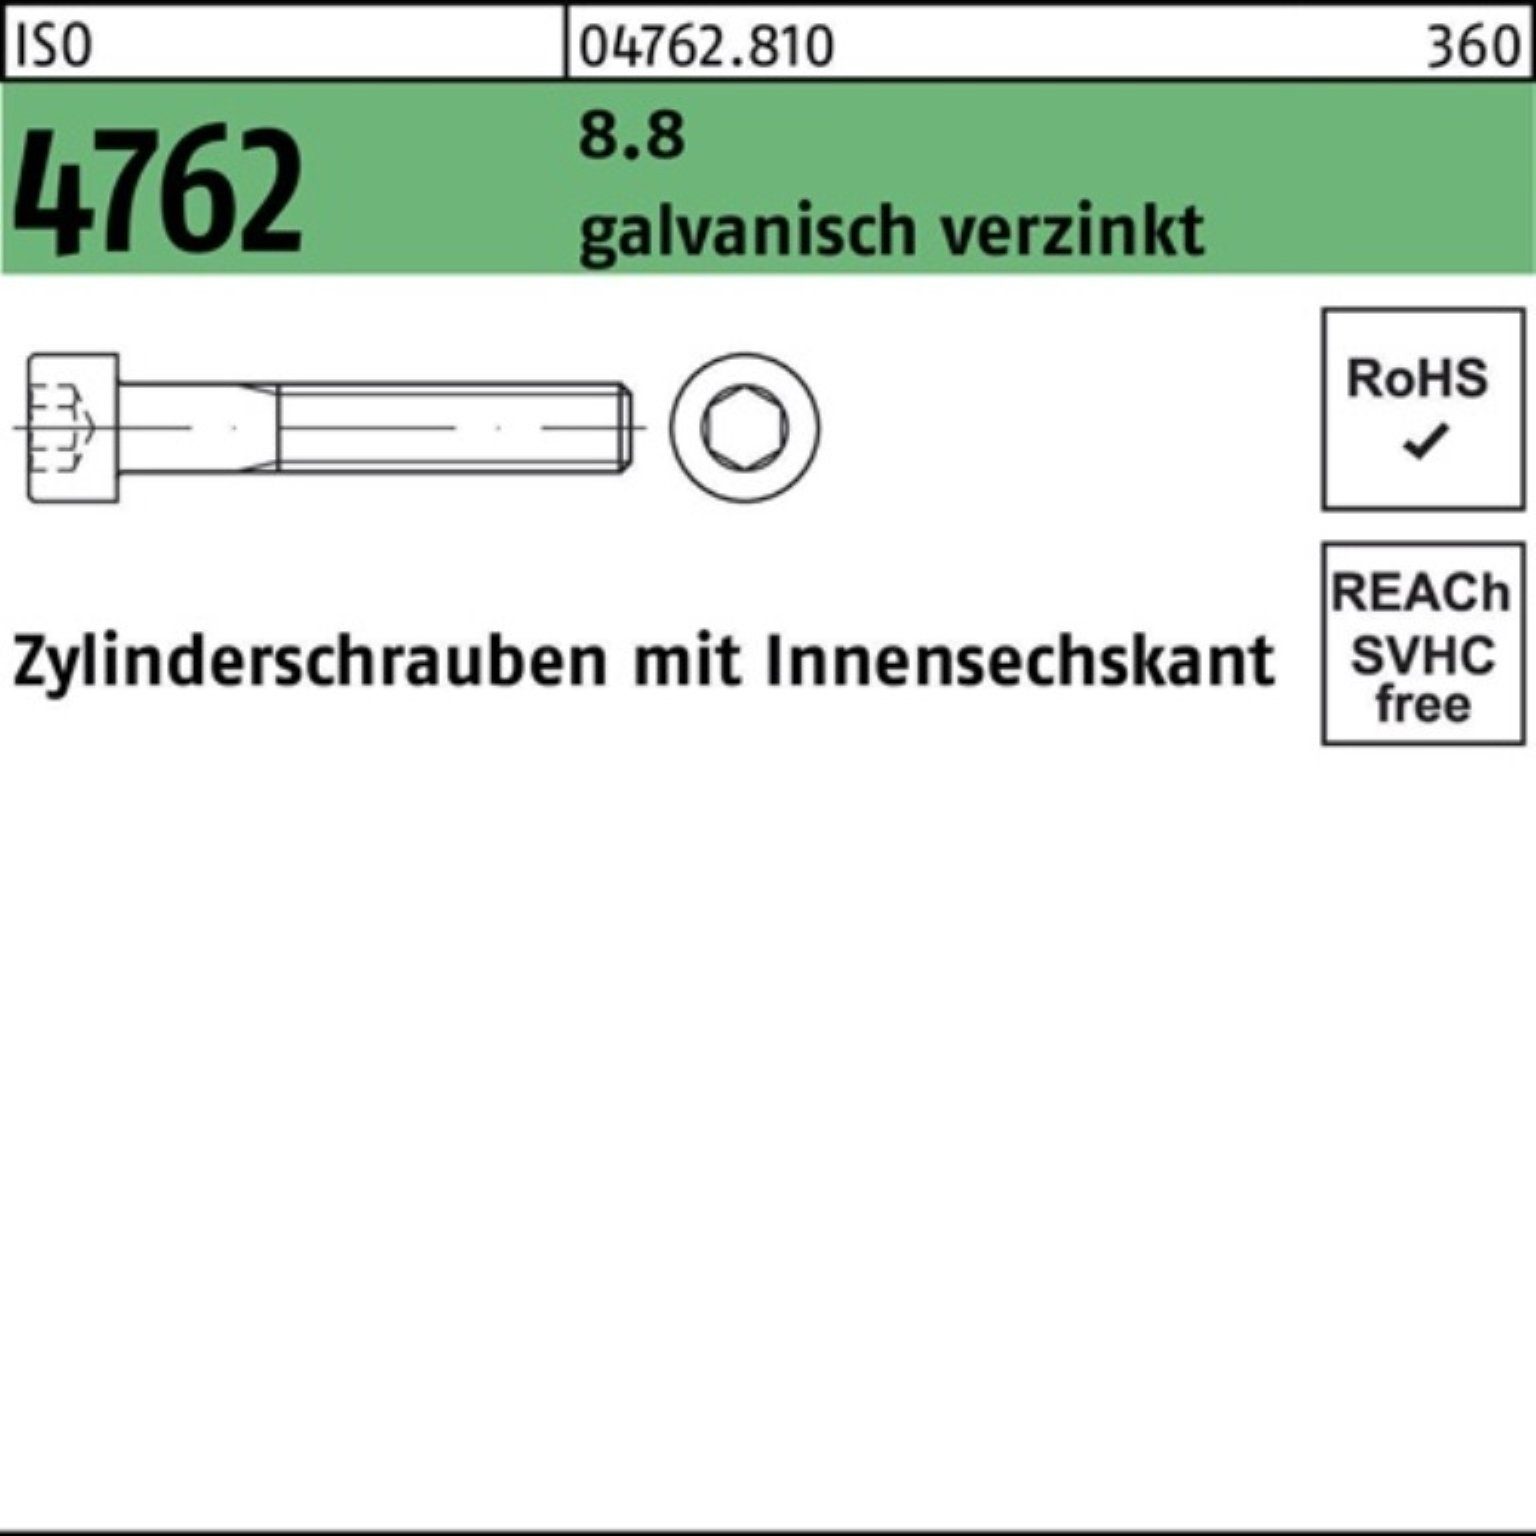 Zylinderschraube Innen-6kt 4762 Reyher Zylinderschraube 100er ISO Pack galv.verz. 1 M27x90 8.8